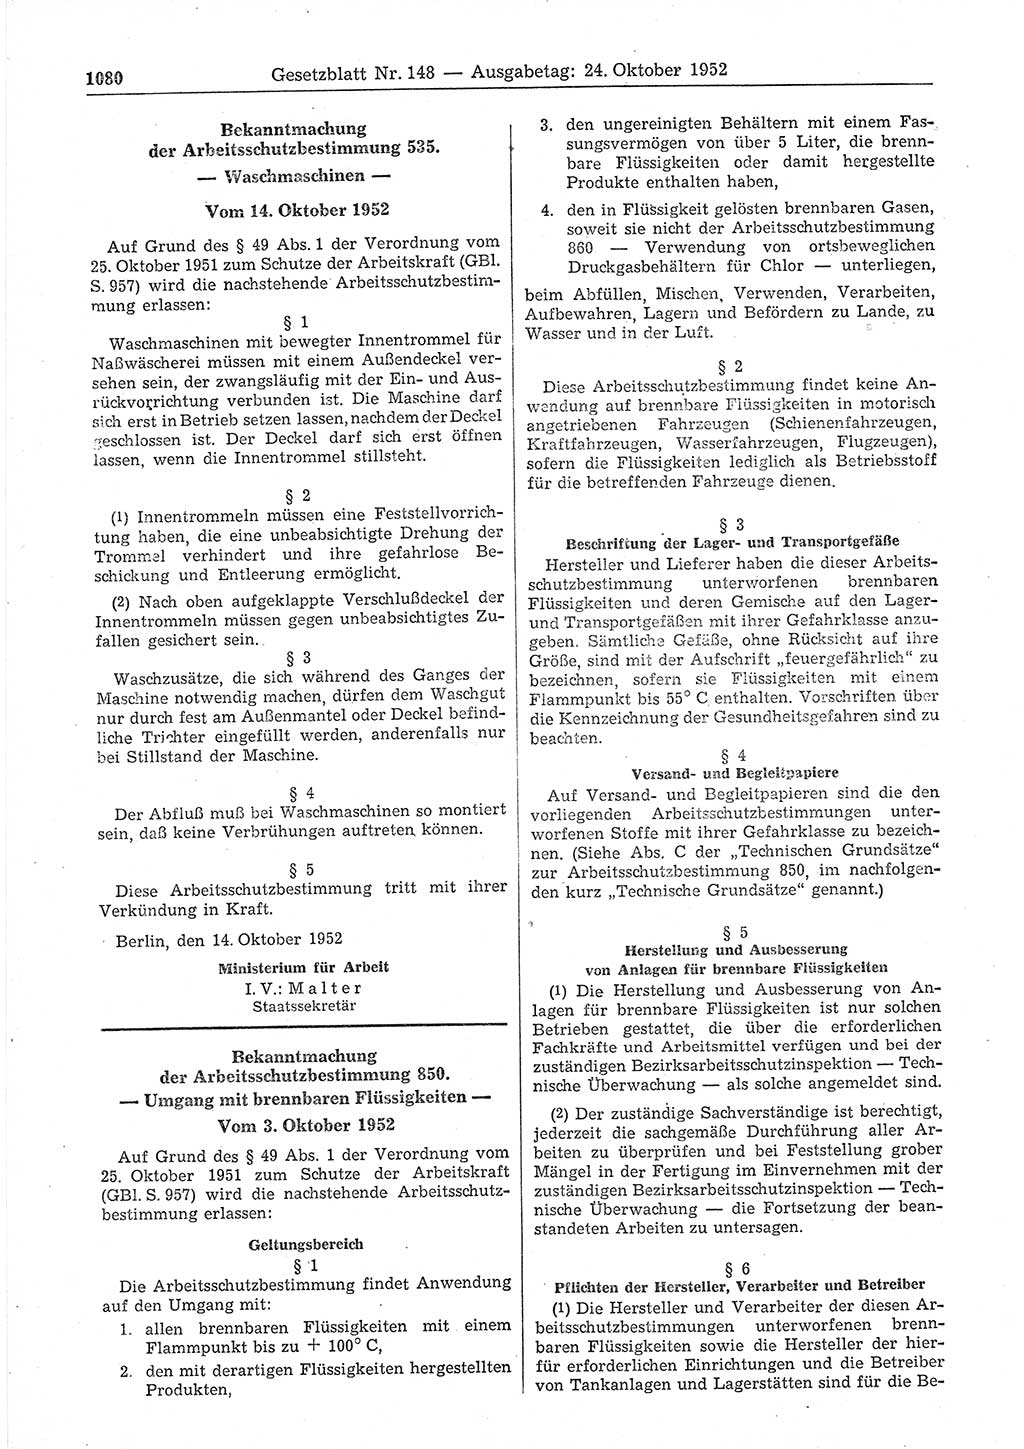 Gesetzblatt (GBl.) der Deutschen Demokratischen Republik (DDR) 1952, Seite 1080 (GBl. DDR 1952, S. 1080)